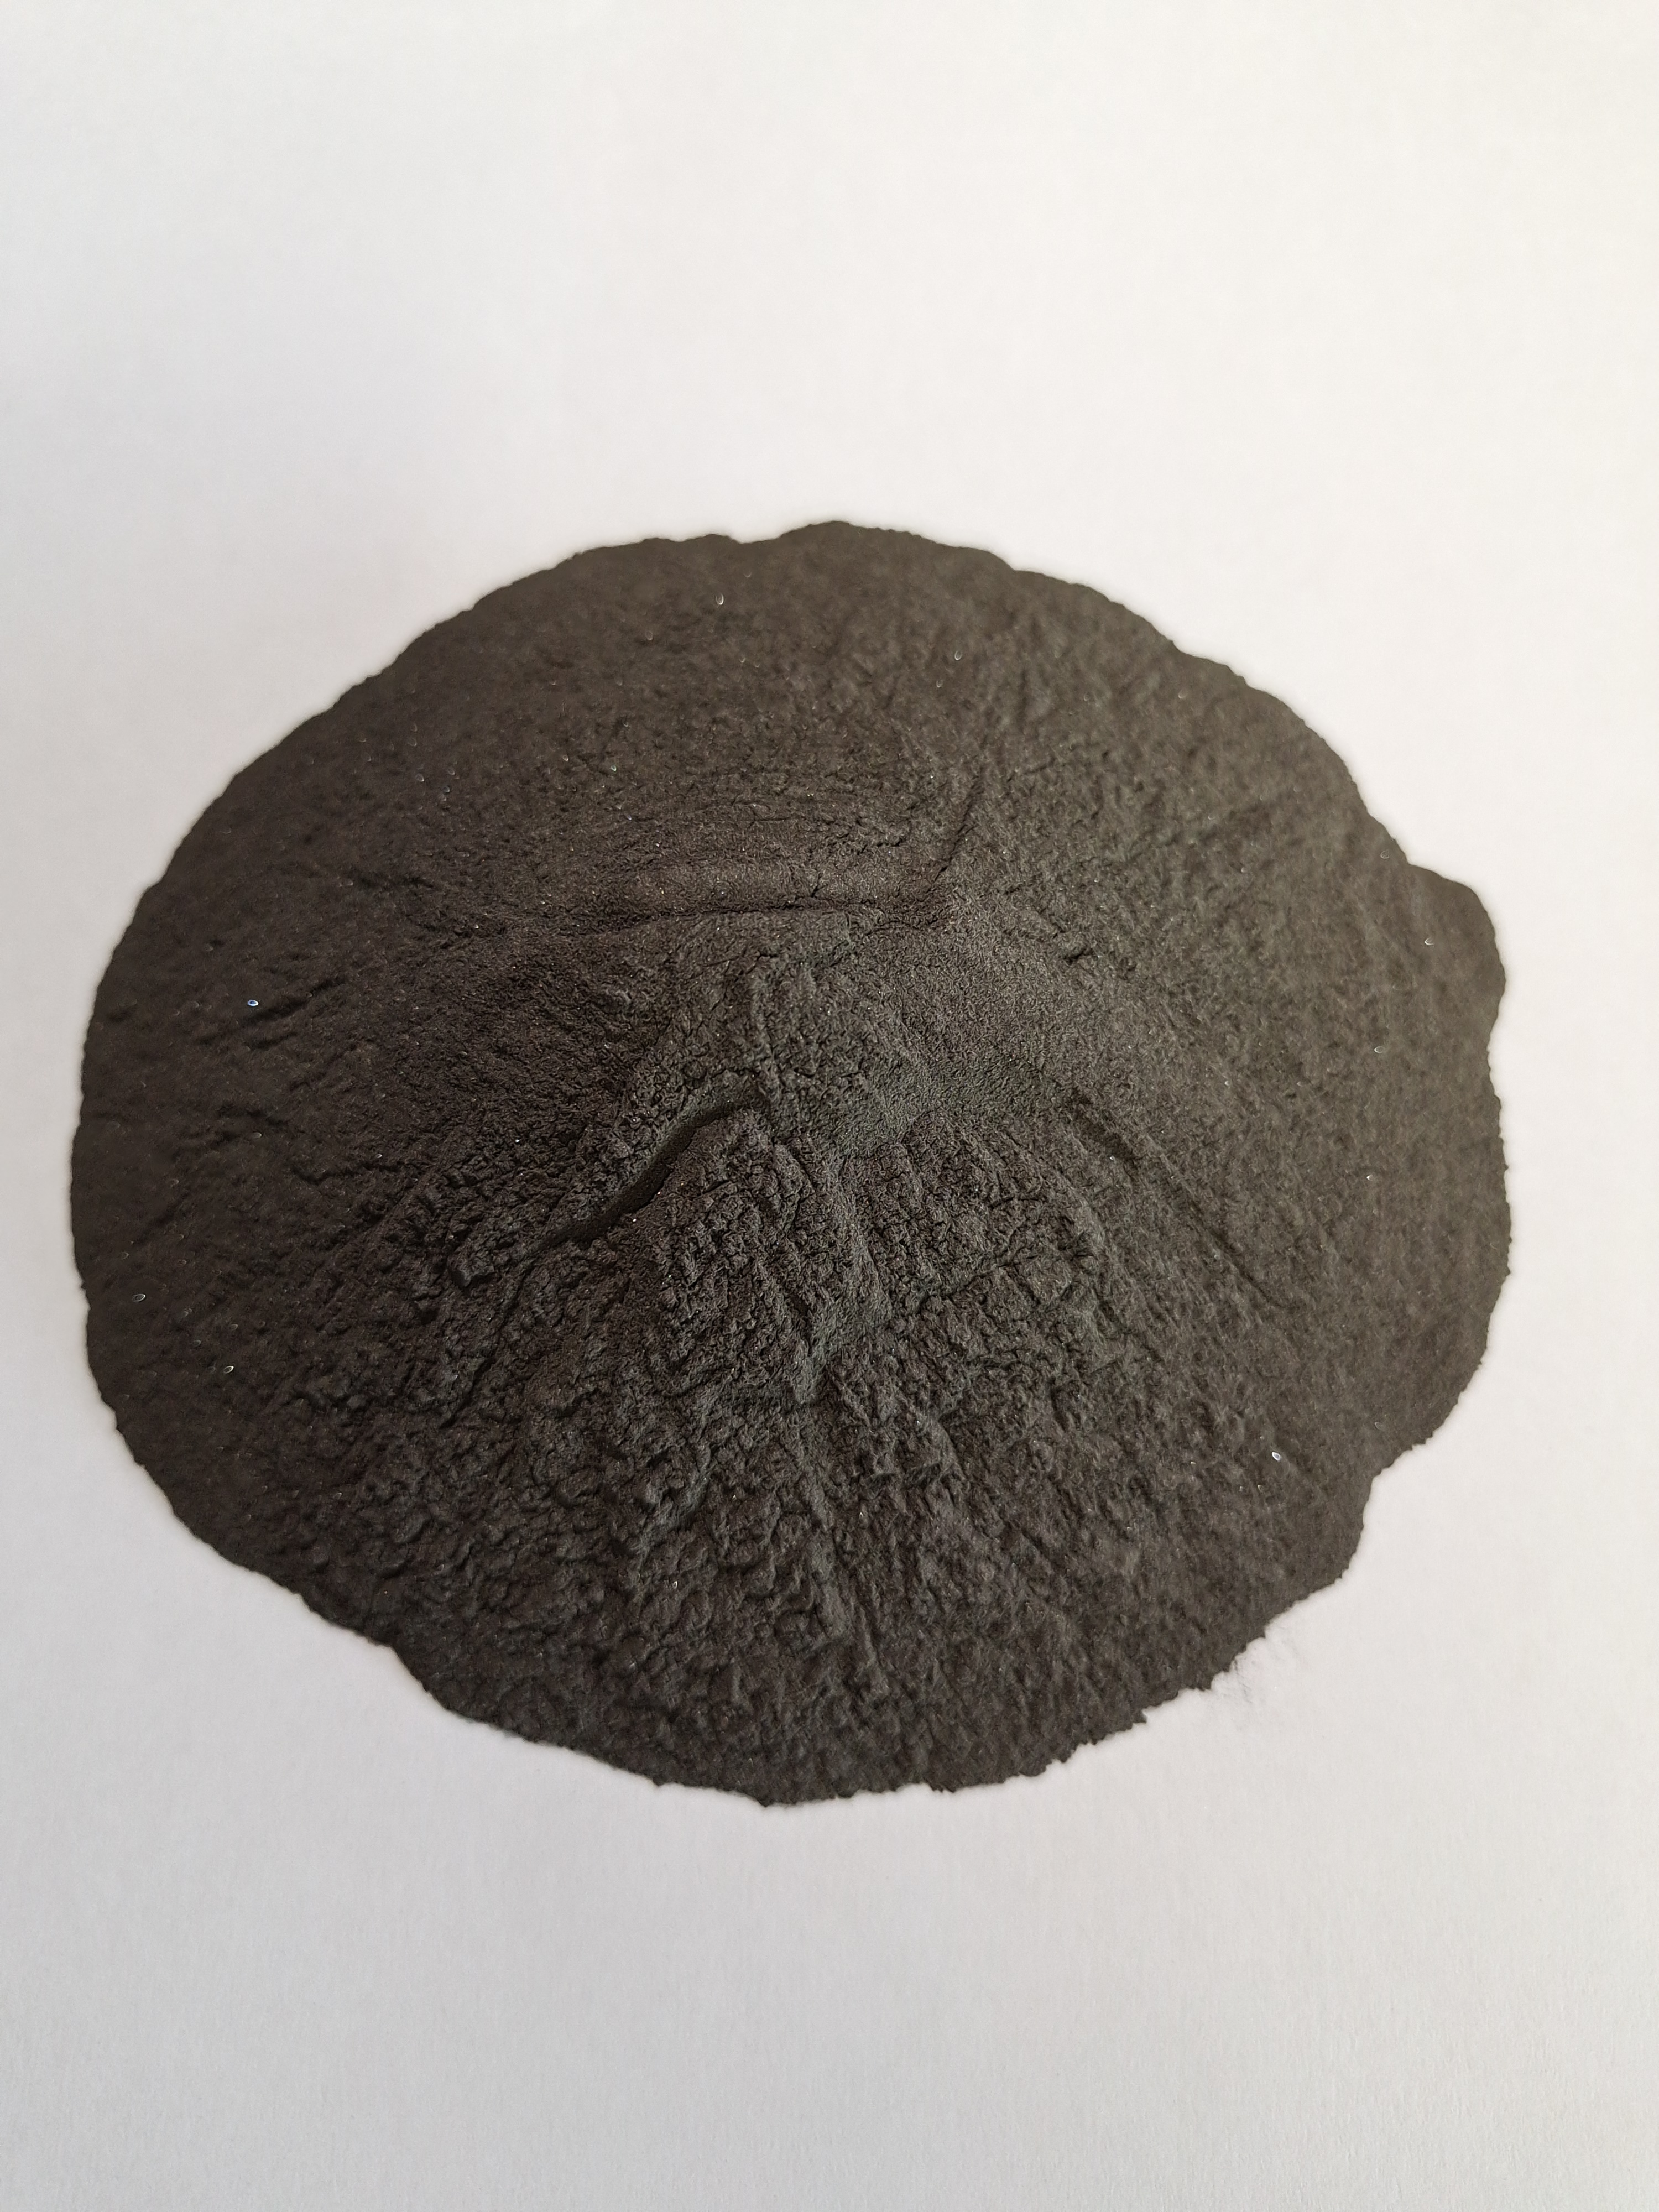 安阳智新创供应澳大利亚选矿浮选剂65D研磨低硅铁粉